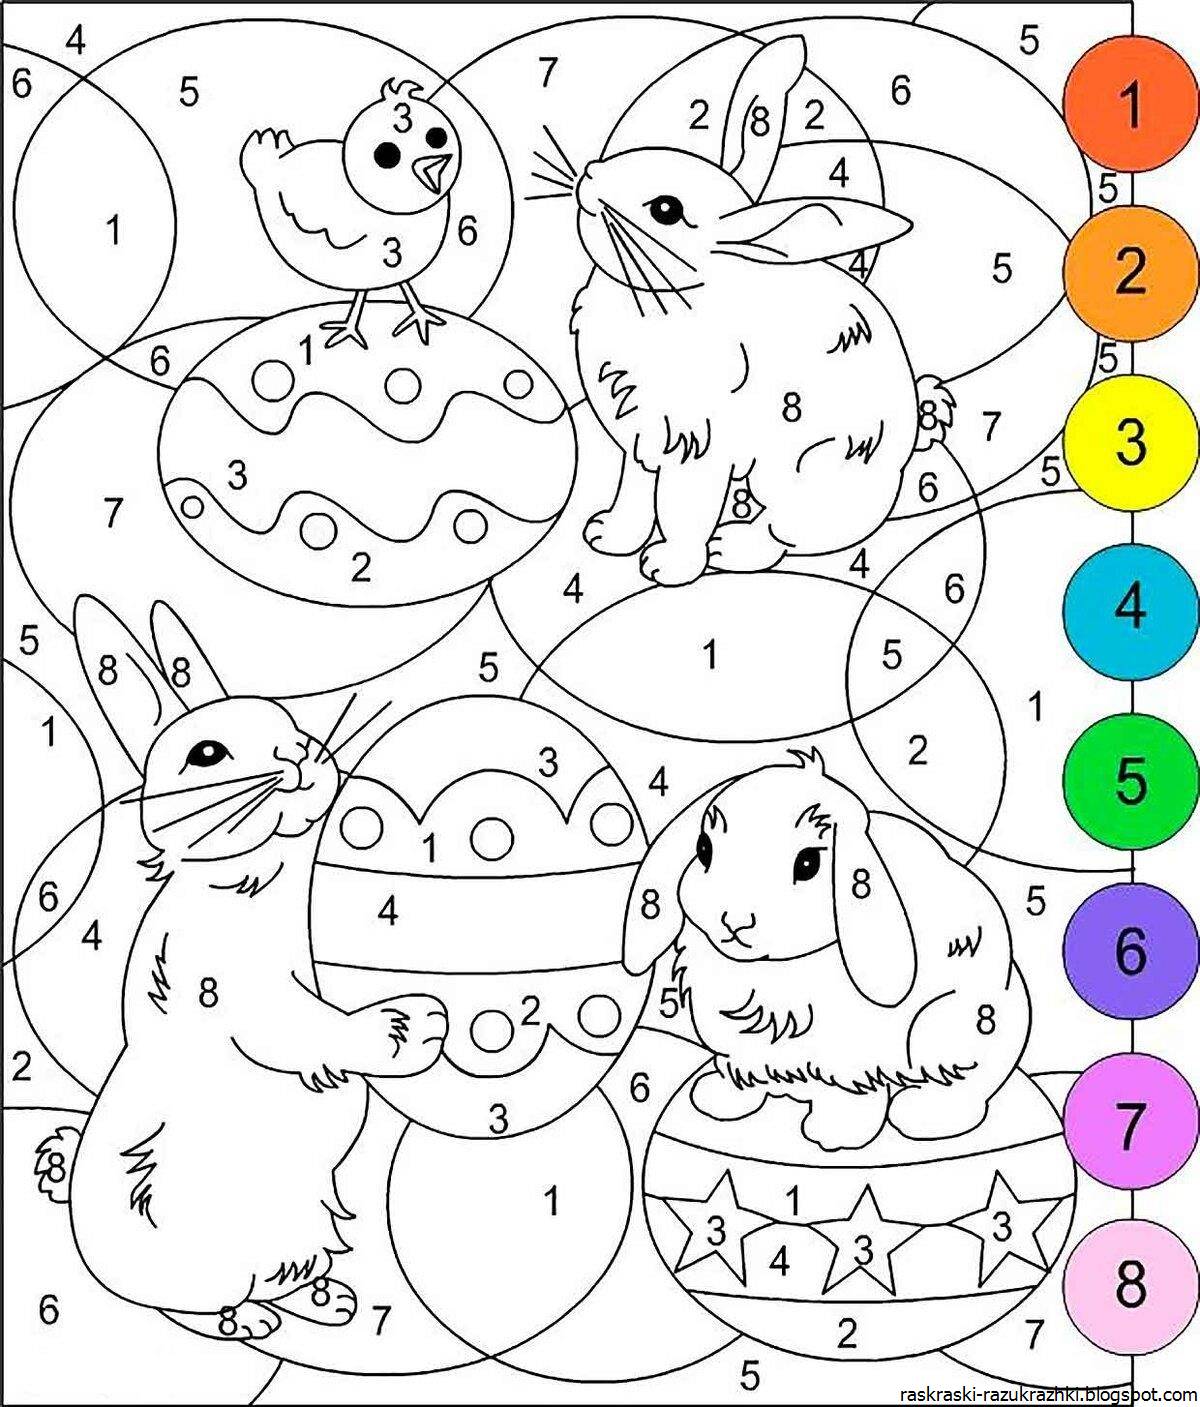 Креативная раскраска для детей 7-8 лет